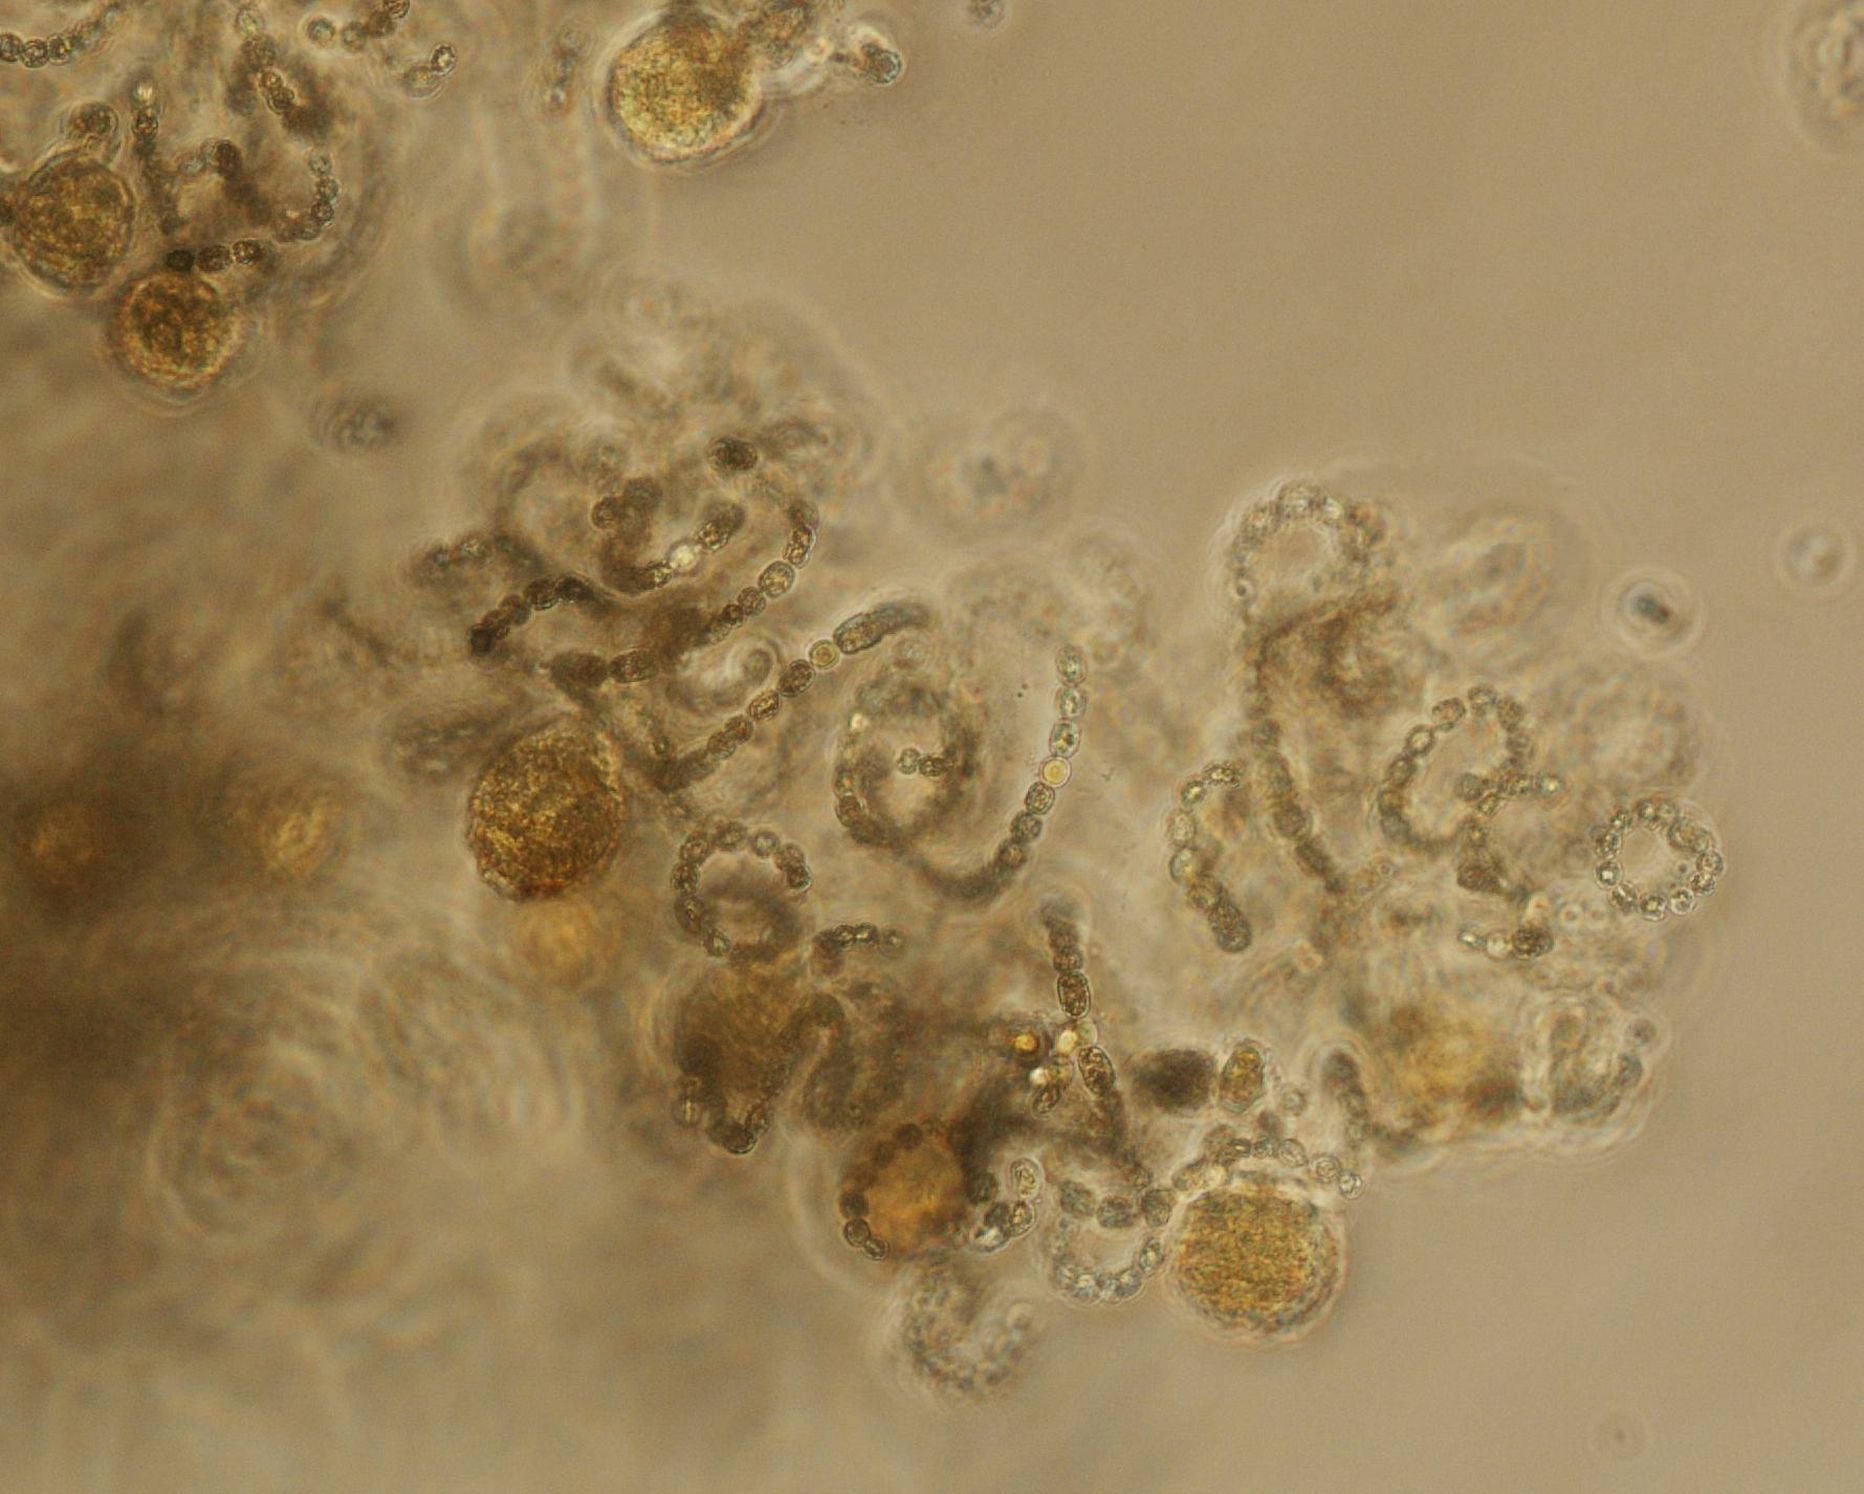 Laupäeval järvest võetud veeproovis tuvastatud sinivetikas Dolichospermum utermoehlii mikroskoobis 200 korda suurendatult.